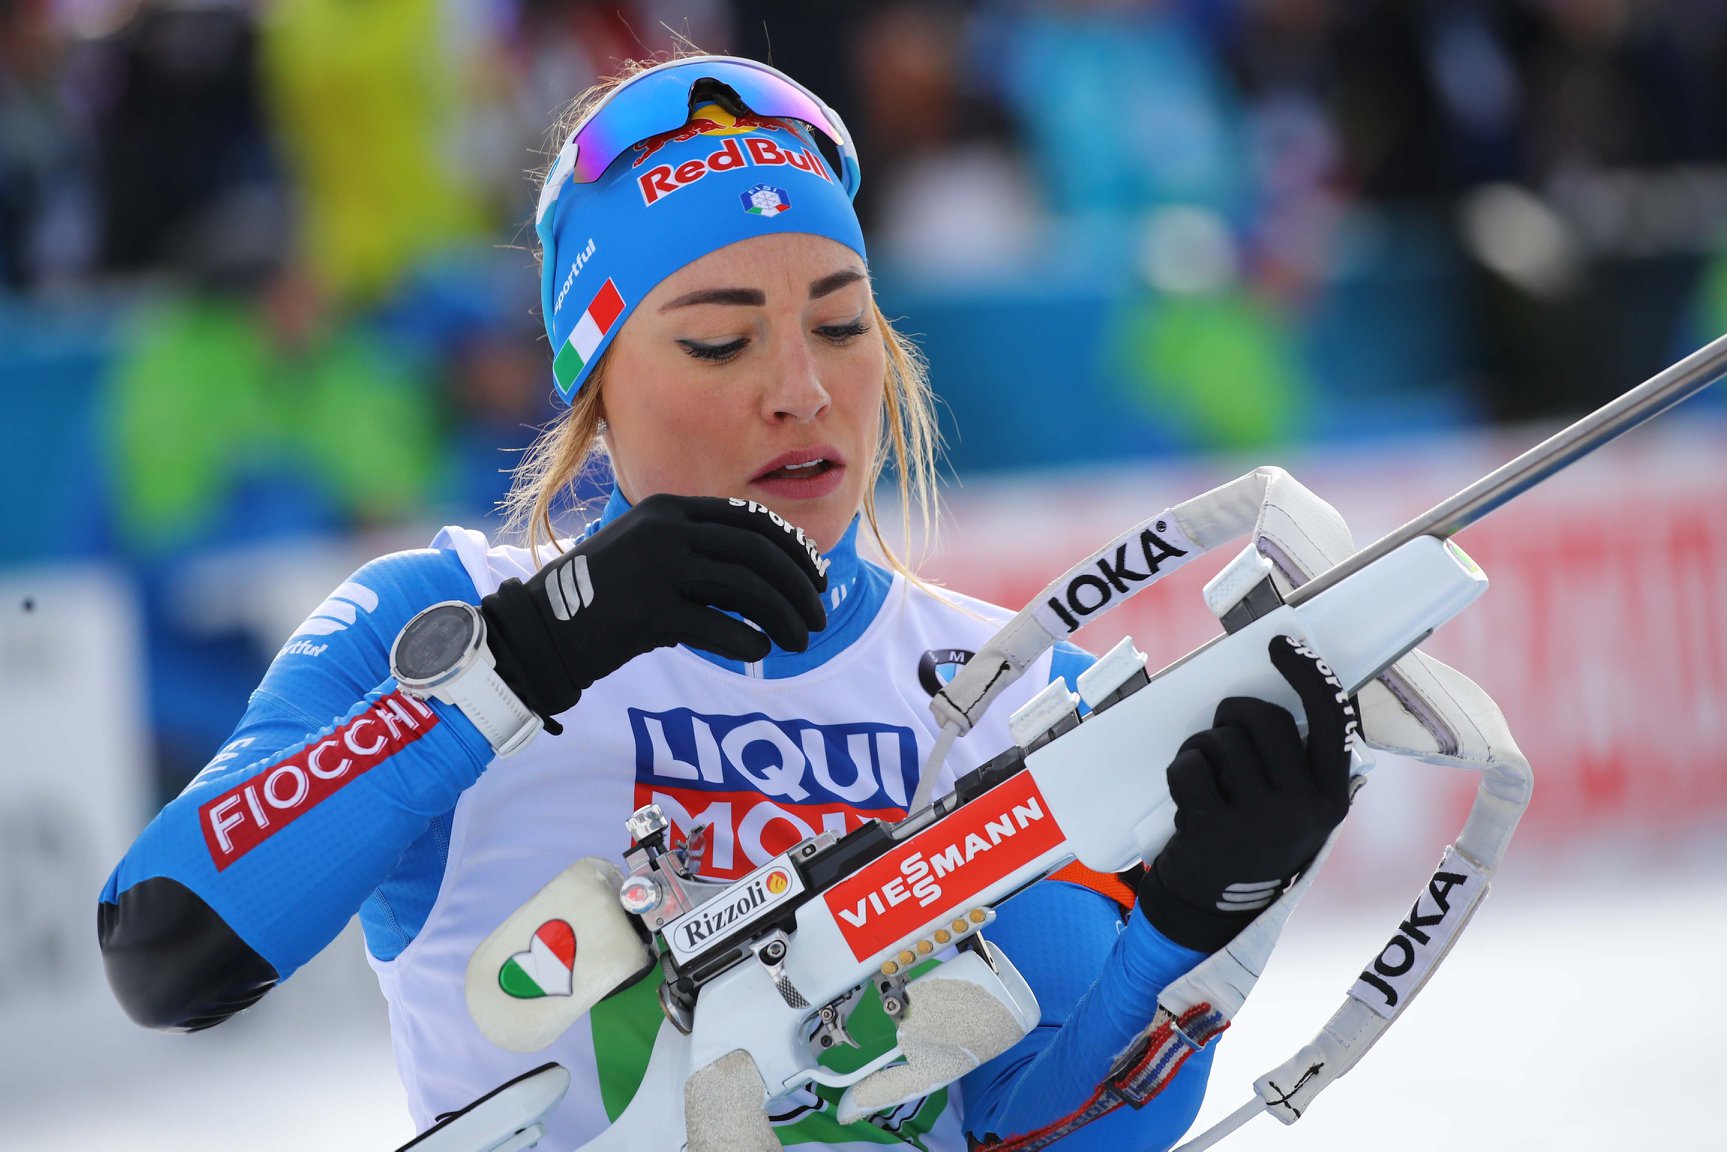 Dorothea Wierer ricarica la carabina durante una sessione di tiro in piedi ai Mondiali di biathlon di Anterselva 2020